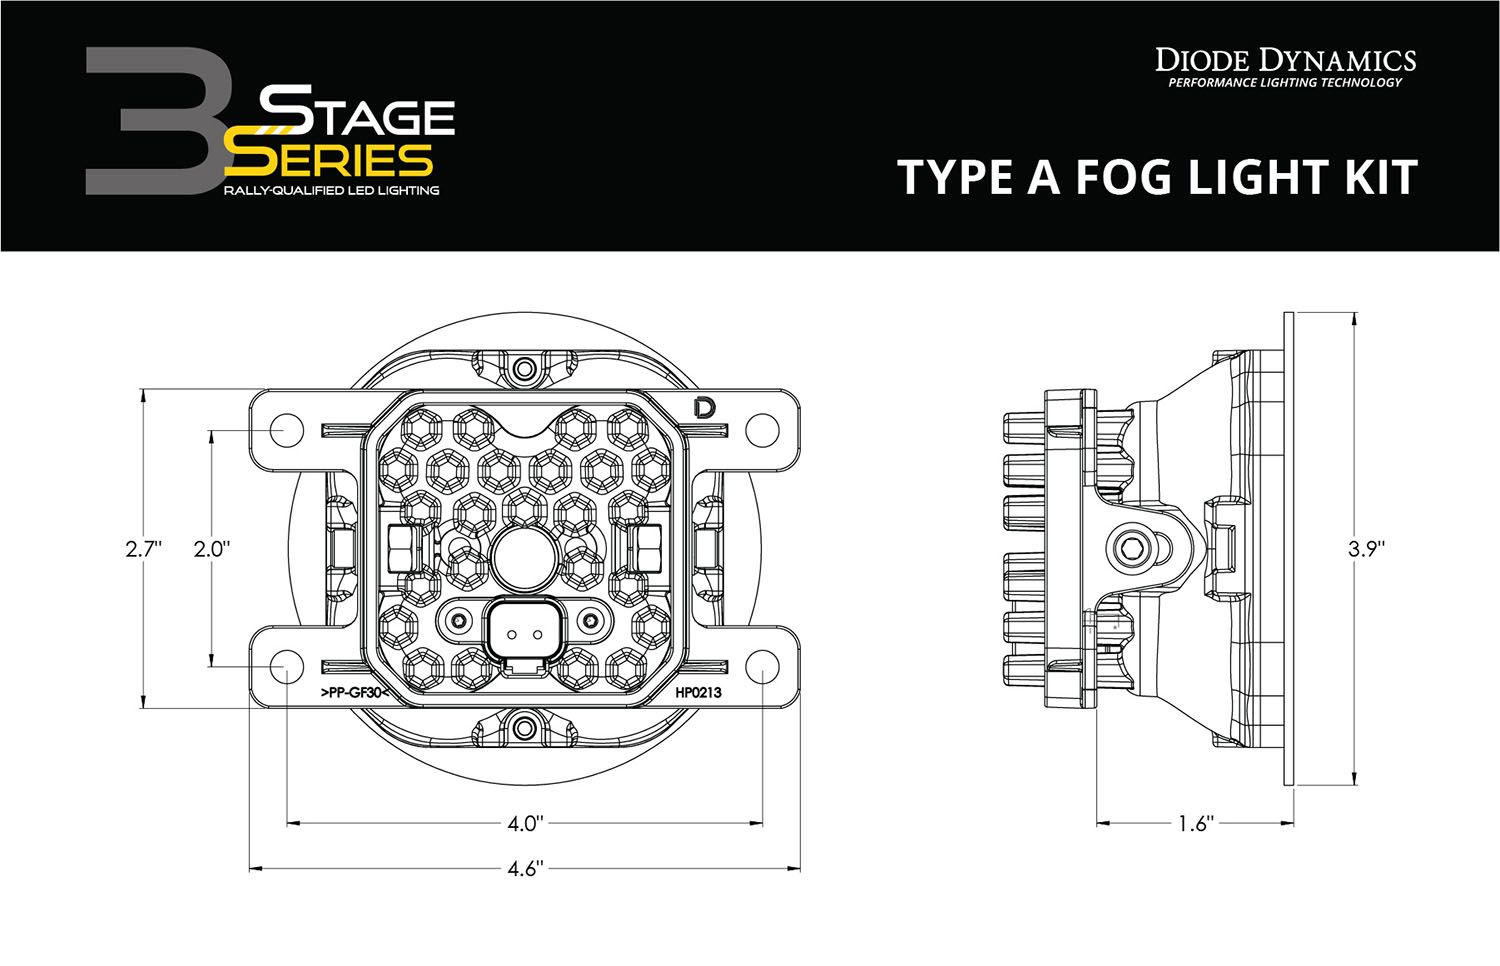 SS3 LED Fog Light Kit For 2022-2023 Subaru Outback Wilderness